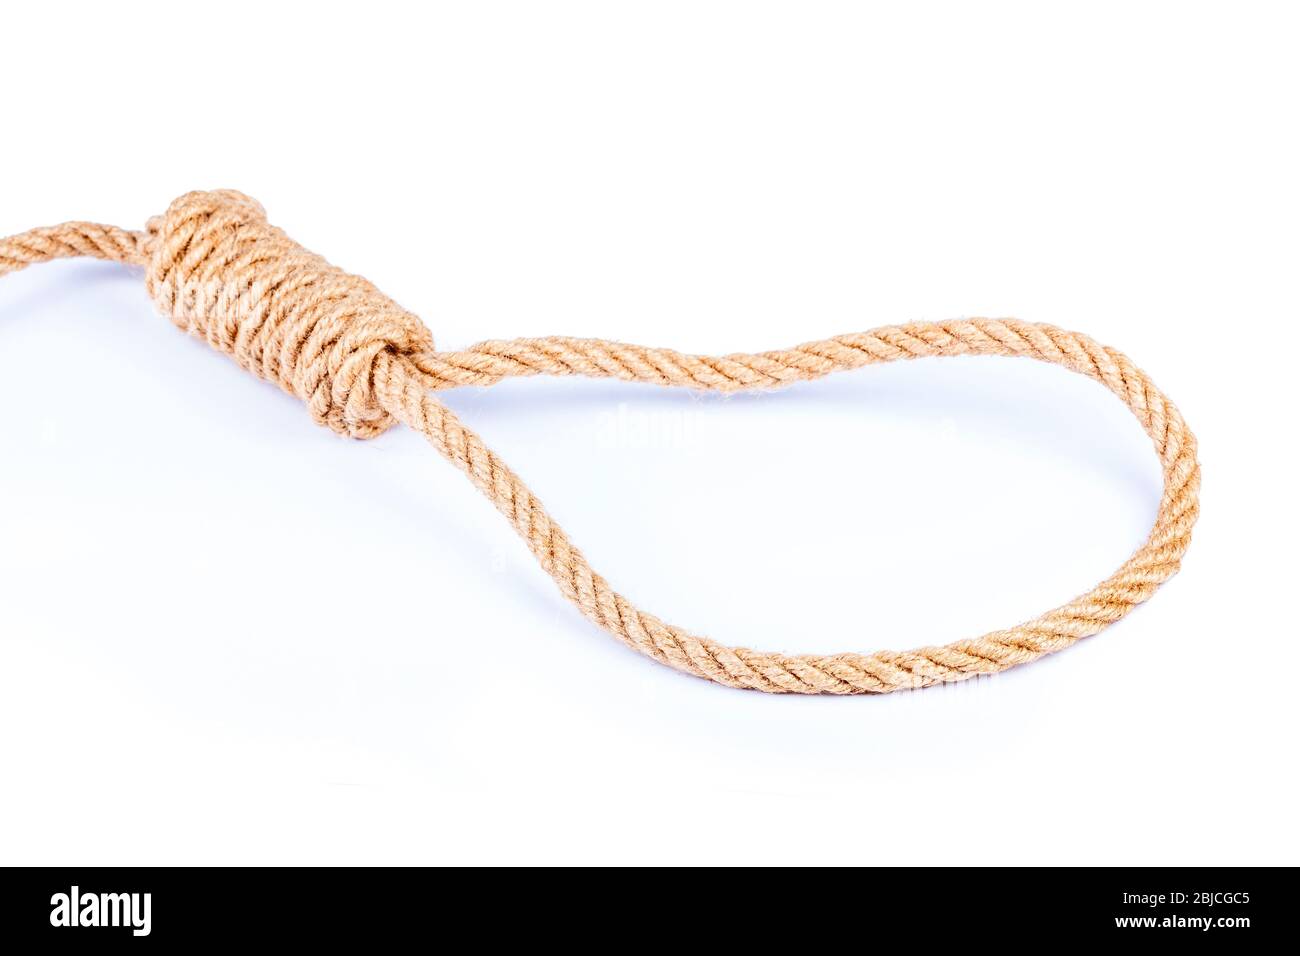 Symbole de nœud noué, nœud marron à boucle de corde, objet isolé, fond blanc, découpe. Suicide, symbolique de la peine de mort, gautorise, pensées suicidaires Banque D'Images